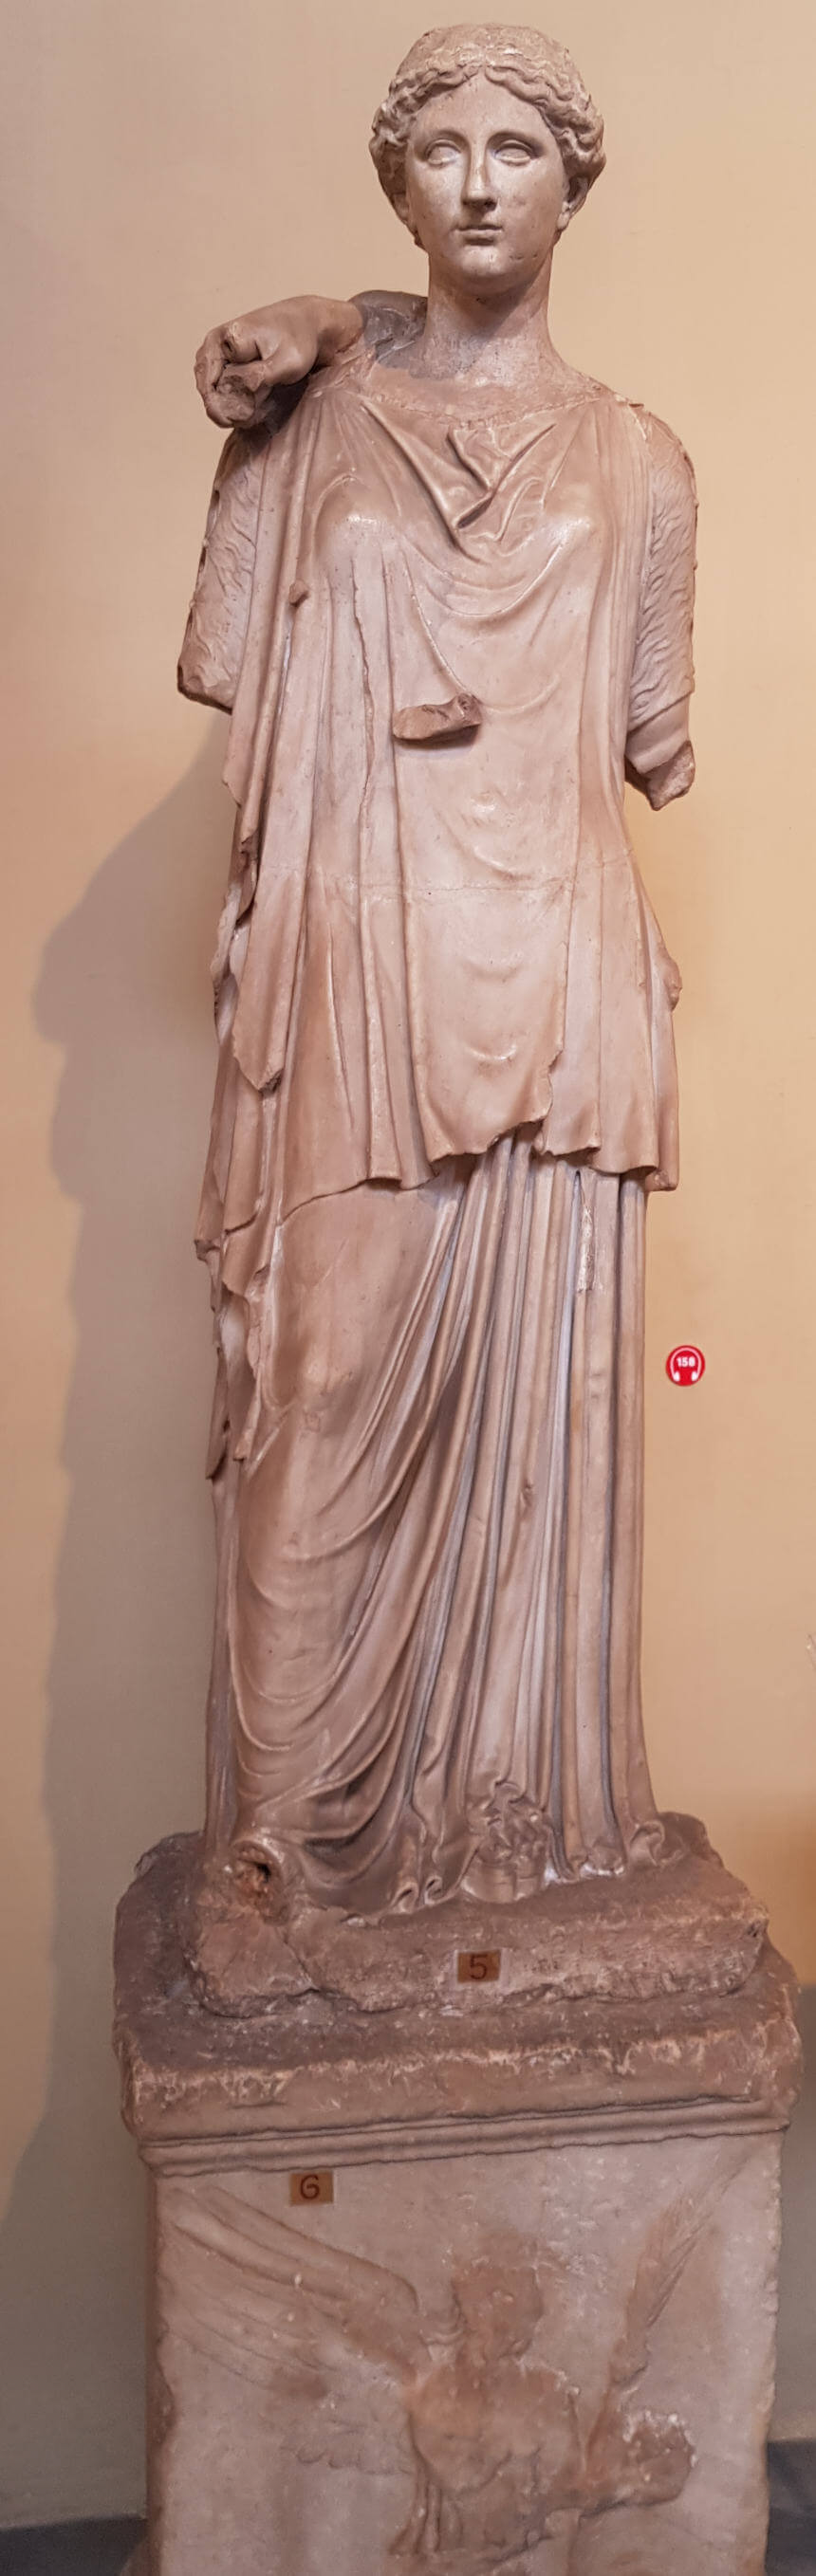 Statue der Hygieia in den Vatikanische Museen. Es wird angenommen, dass sie ursprünglich zusammen mit Asklepios dargestellt wurde, dessen Hand noch heute auf ihren Schultern liegt